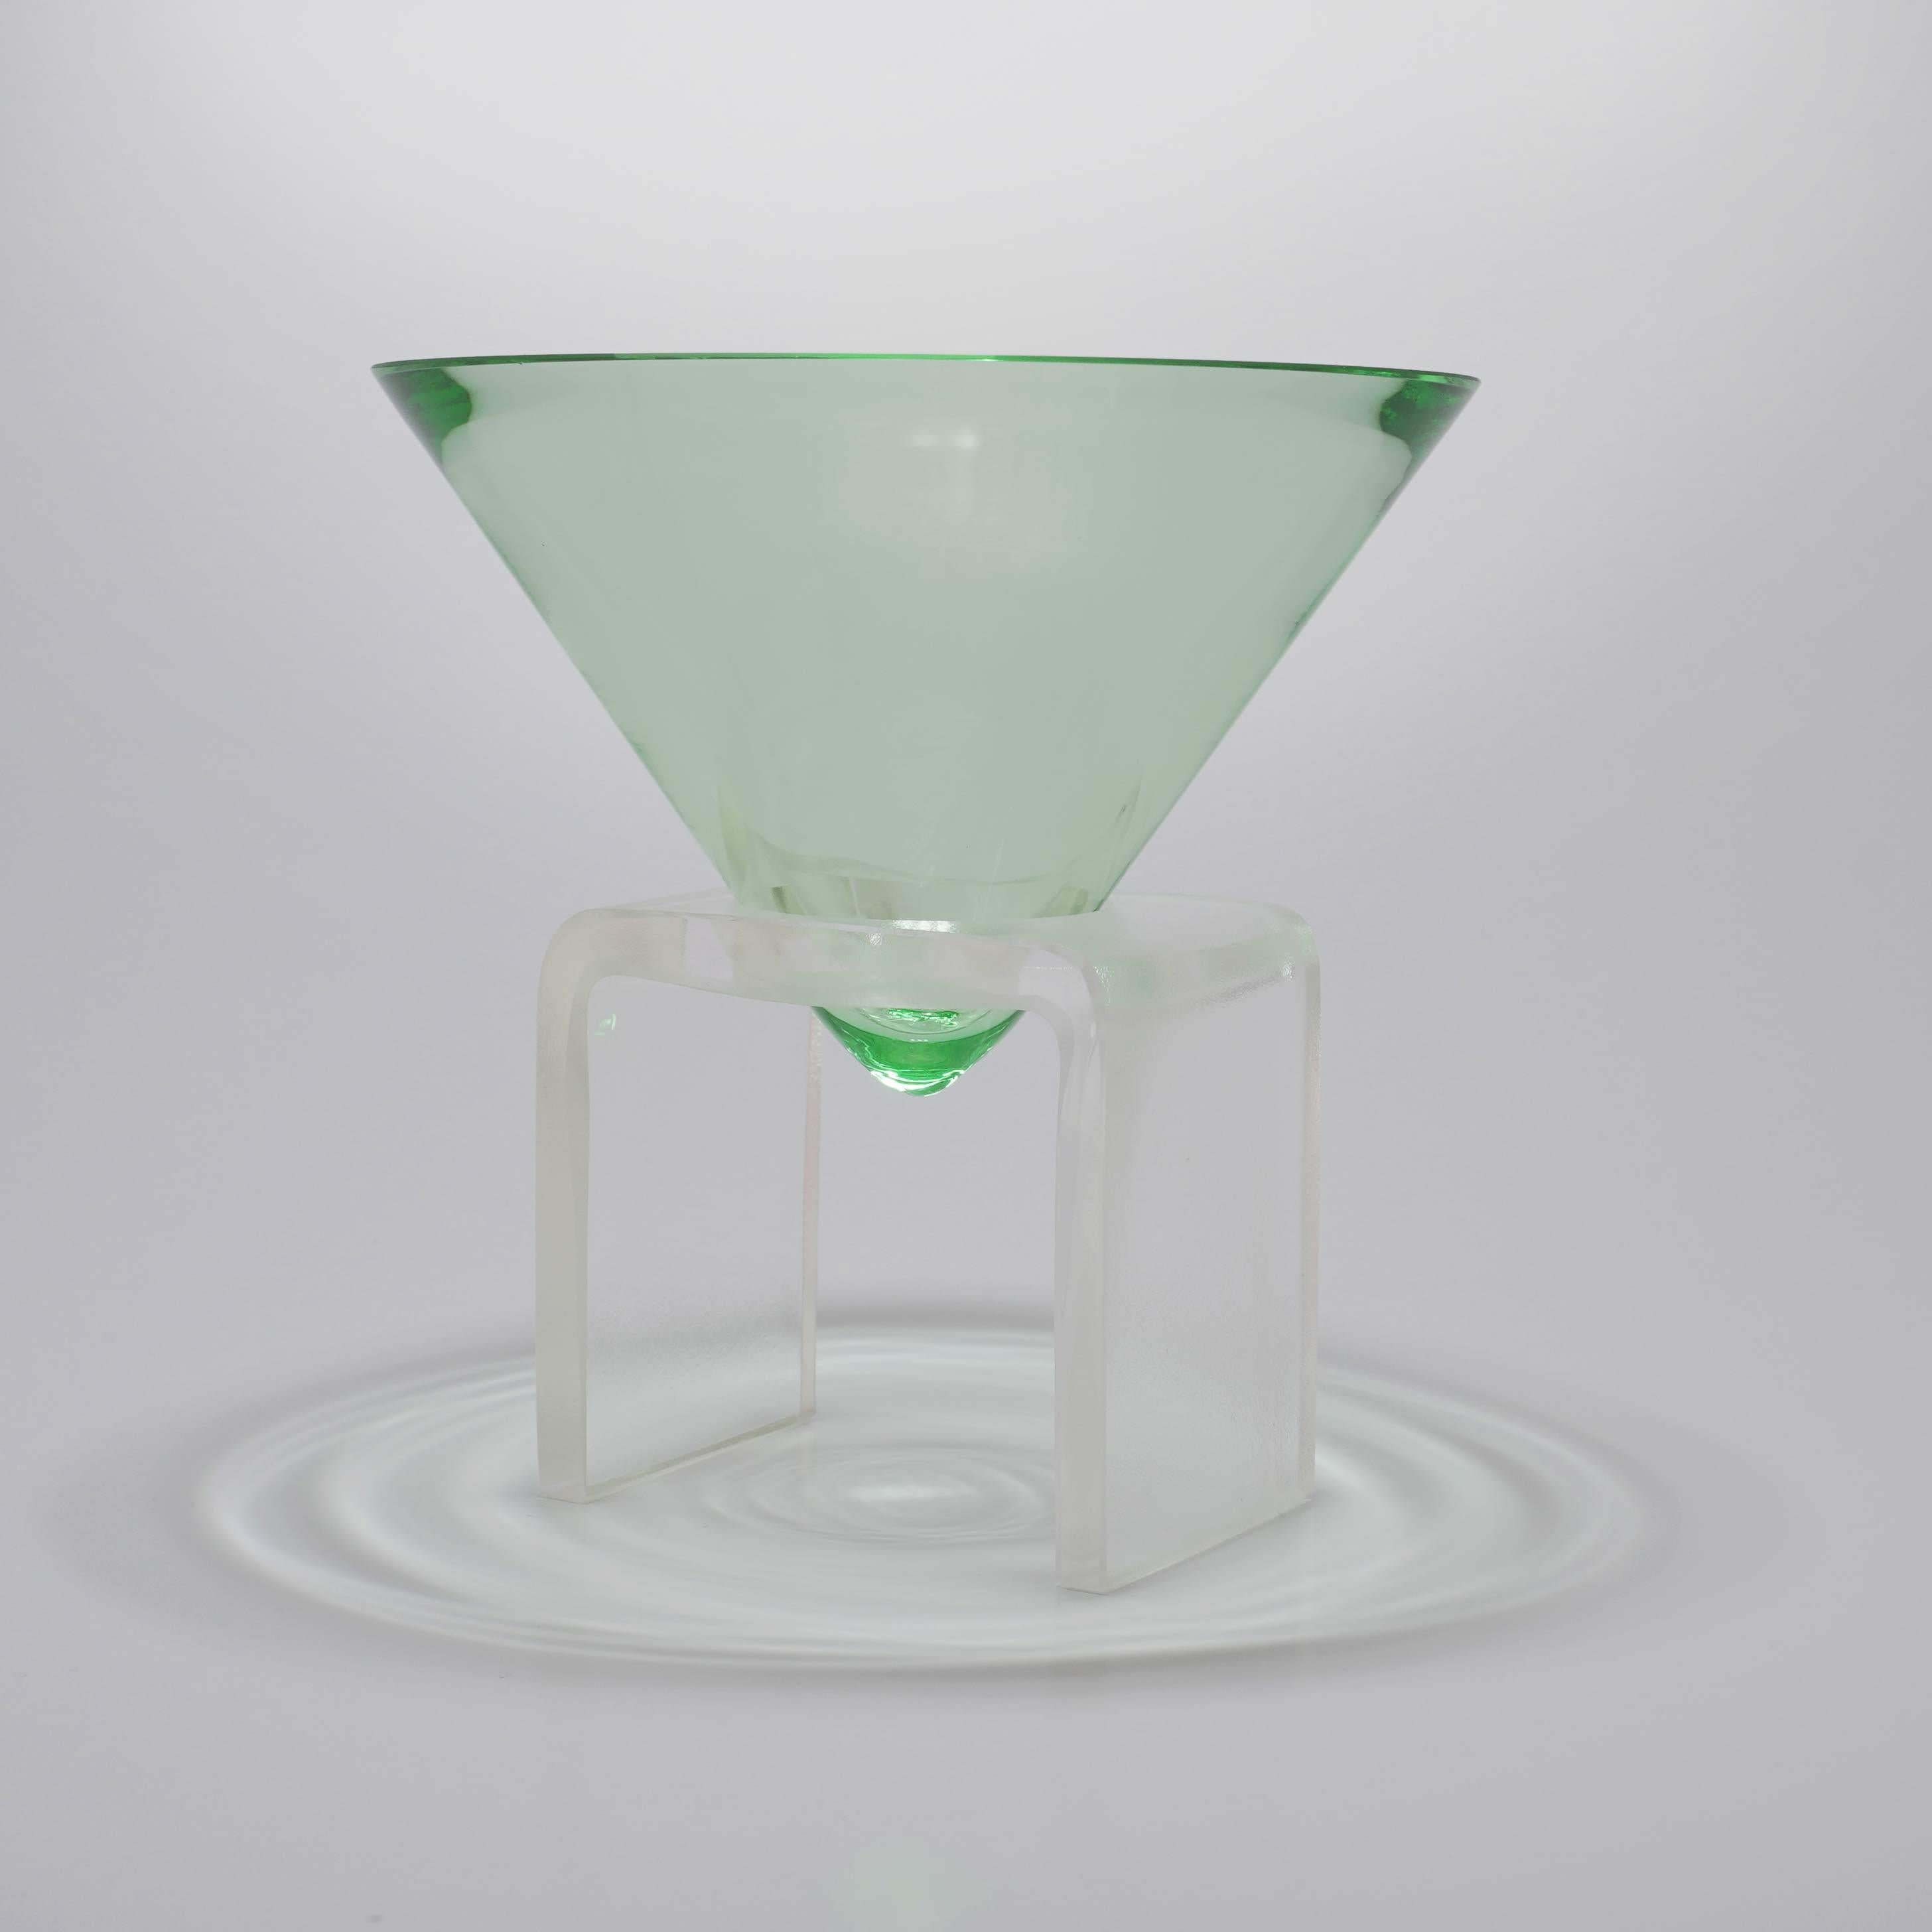 Martini-Glas von Kickie Chudikova
Limitierte Auflage von je 5 Stück - 3 Stück auf Lager
Handgefertigt in der Tschechischen Republik, wird keine weitere Auflage produziert.
Jedes Stück ist etwas anders.
Abmessungen: D 10,9 x H 11,5 cm
MATERIALIEN: